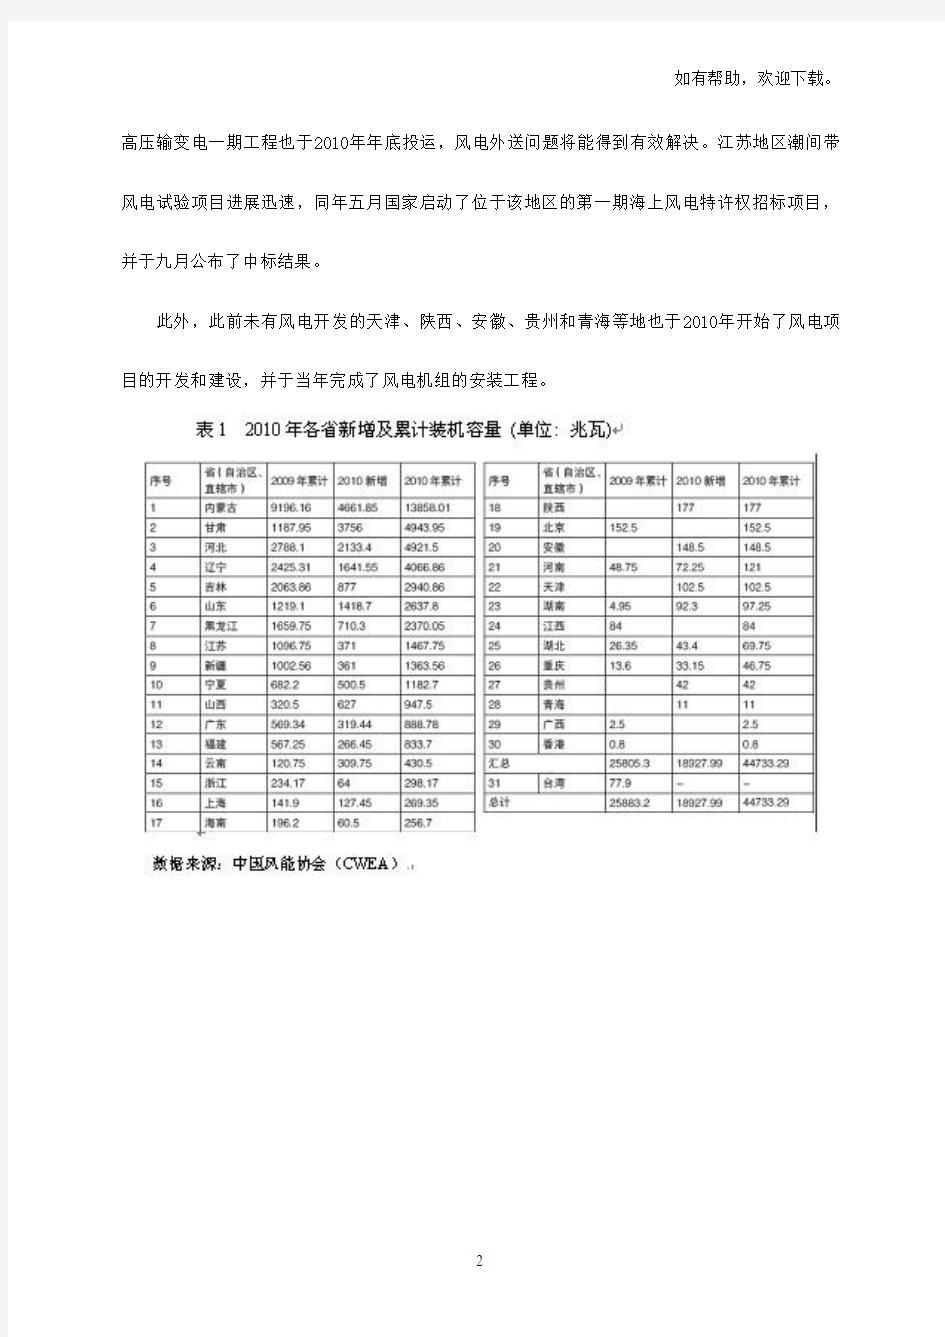 中国风电装机容量统计